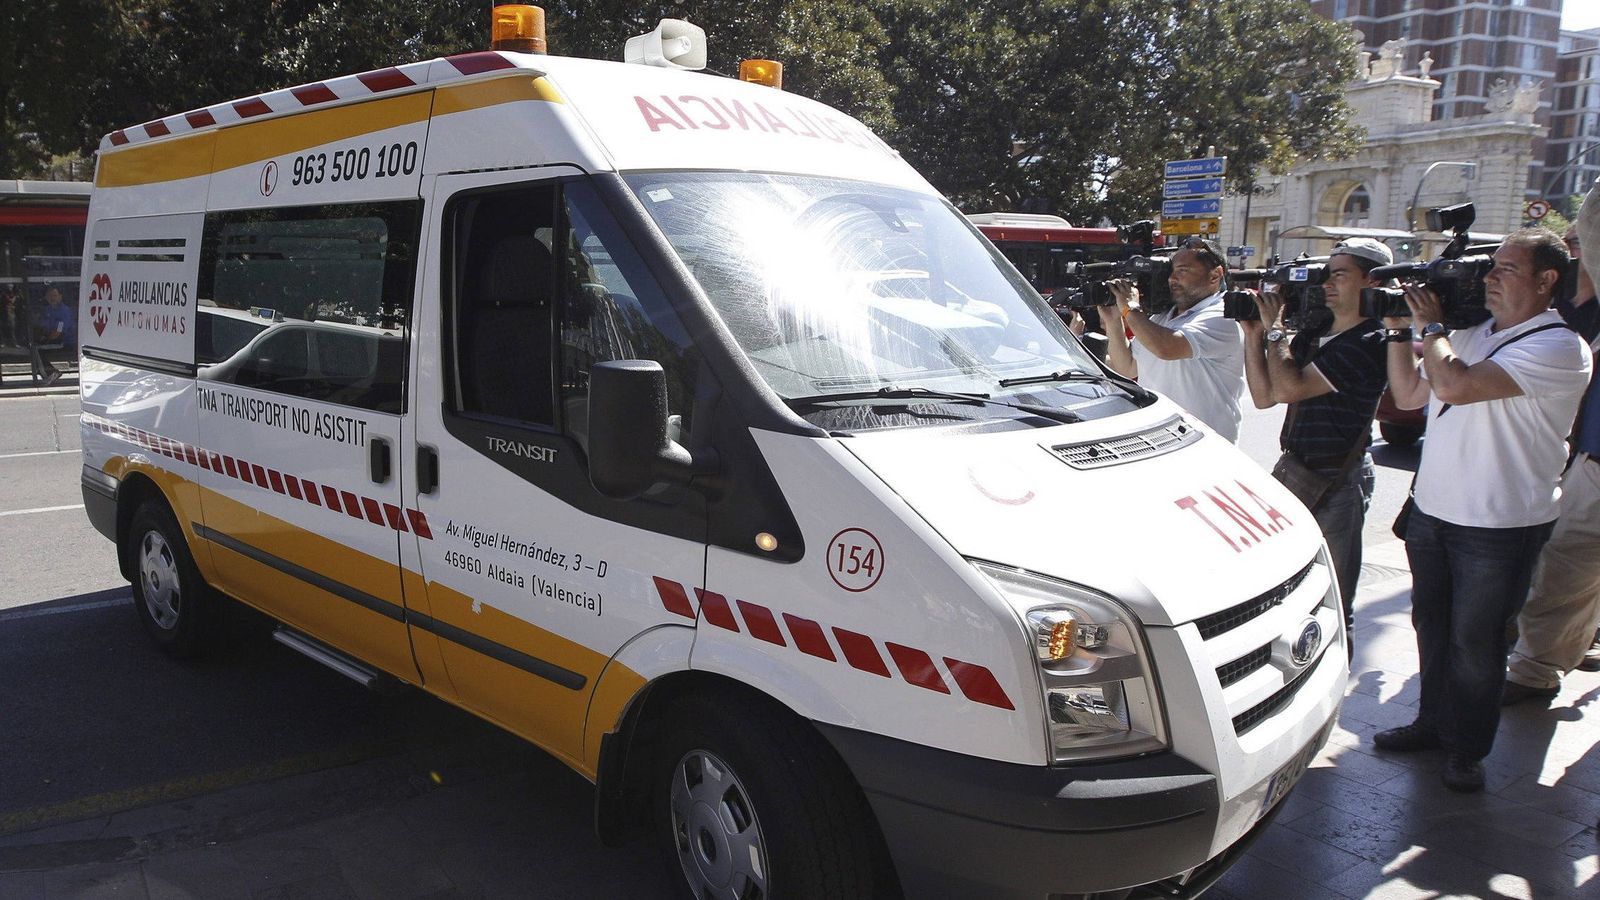 Foto: Ambulancia en Valencia, a las puertas del Tribunal Superior de Justicia de Valencia. (Efe)